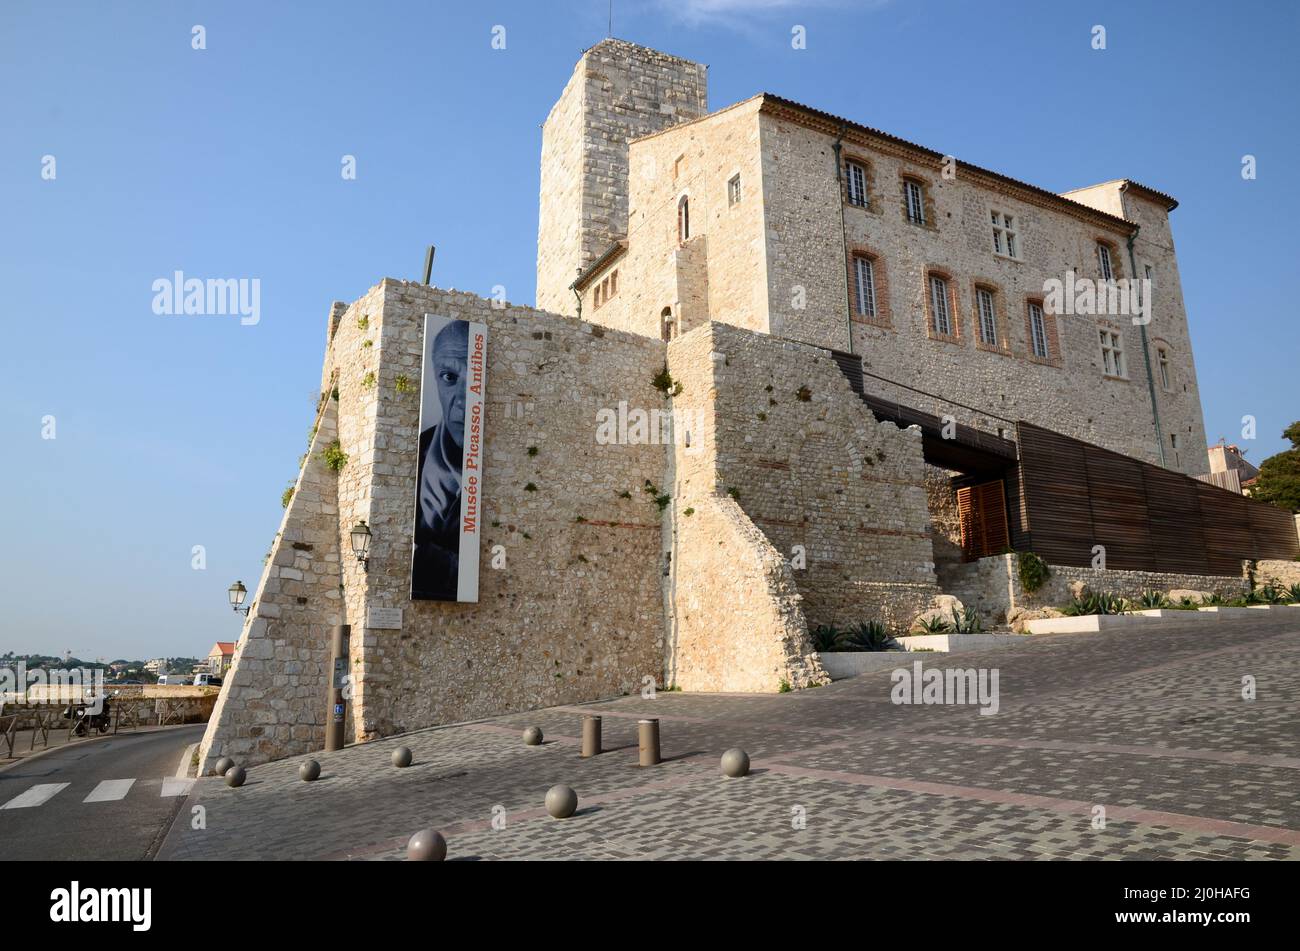 France, côte d'azur, Antibes, le château Grimaldi abrite le musée Picasso où sont exposées des peintures et des céramiques de Pablo Picasso. Banque D'Images